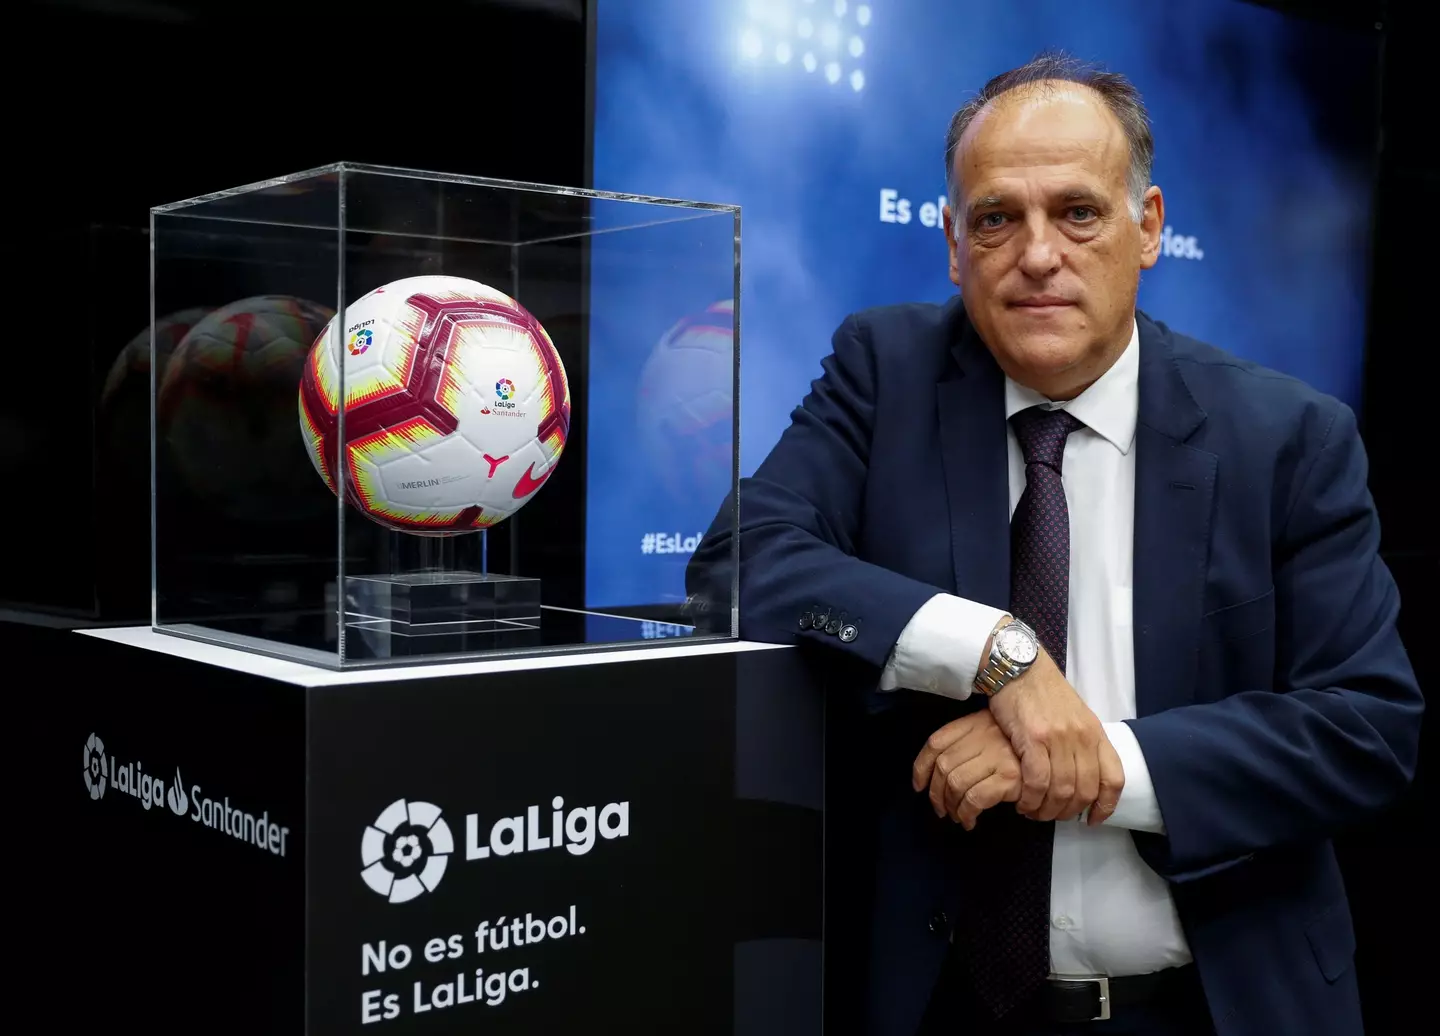 La Liga president, Javier Tebas. REUTERS / Alamy